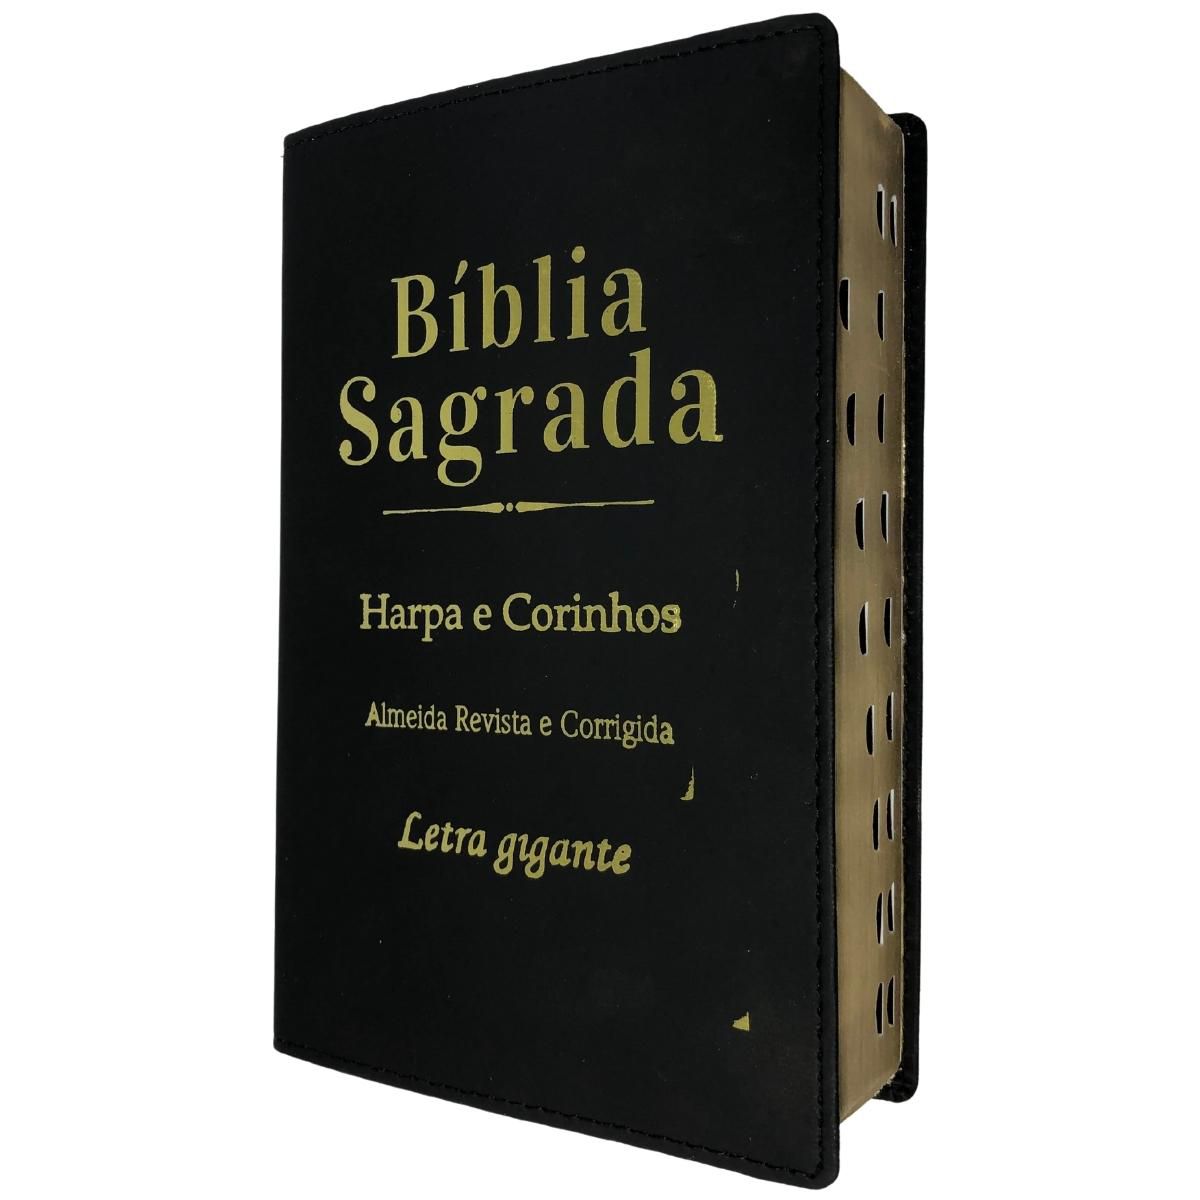 Bíblia sagrada letra grande arc índice com harpa luxo - Bíblia